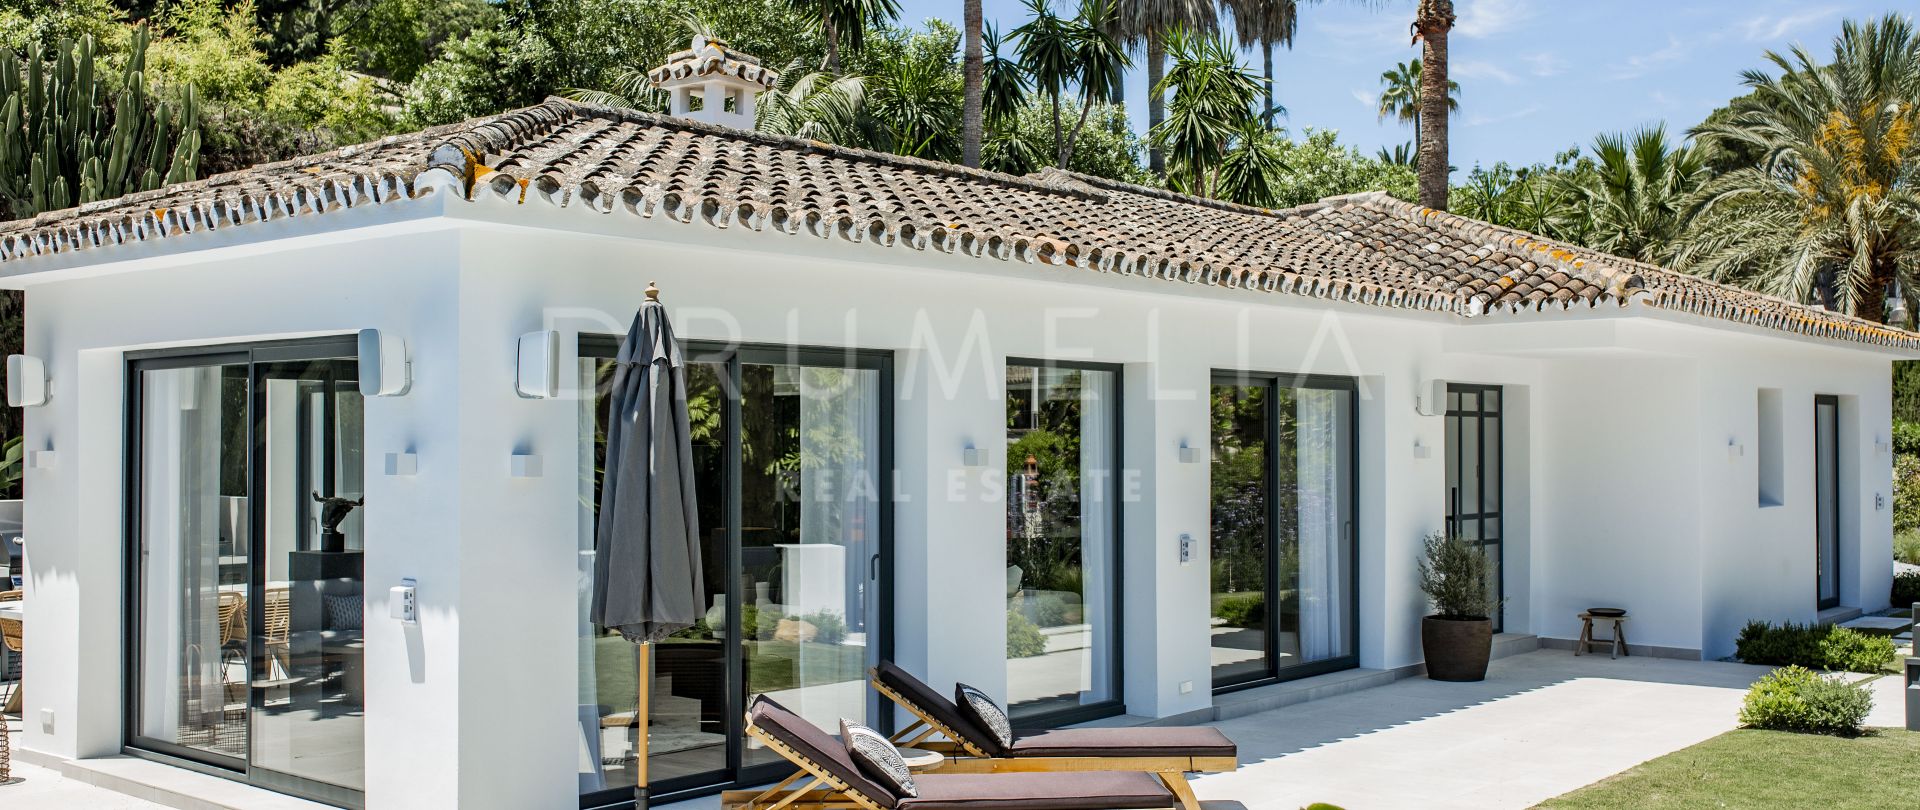 Fantastisk ny modern lyxvilla med skandinavisk Hygge-känsla, Nueva Andalucía